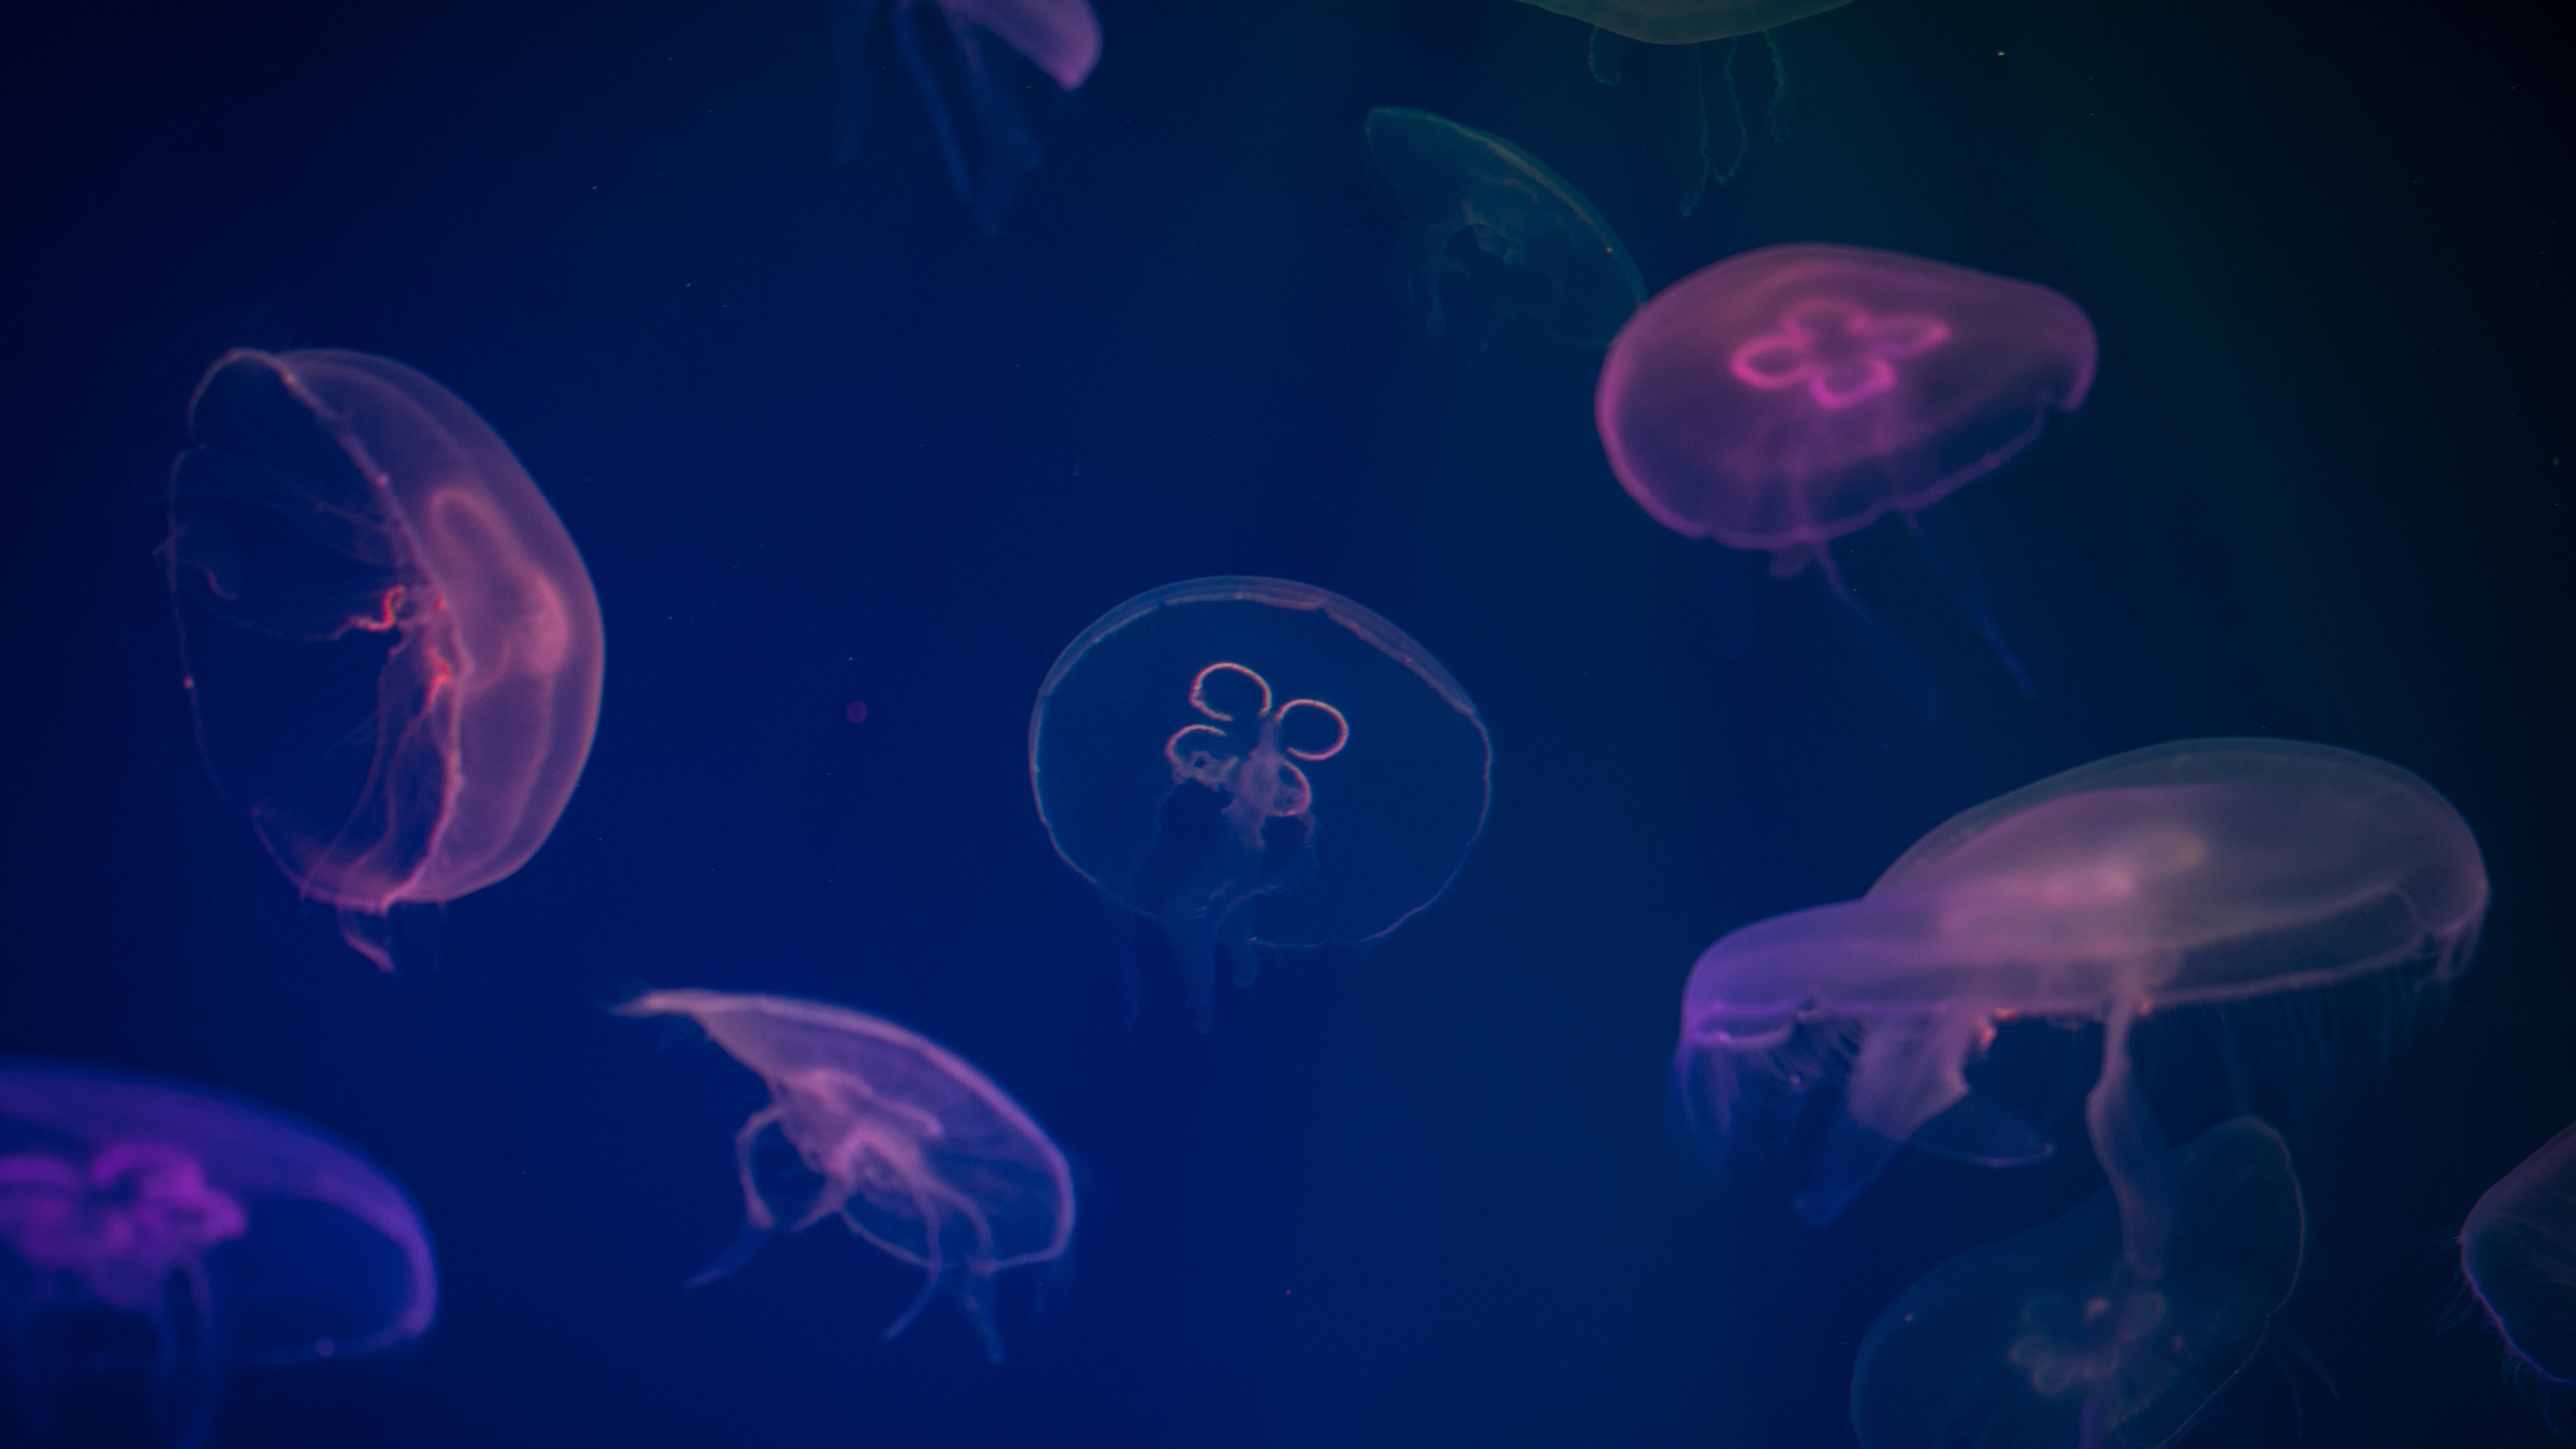 jellyfish digital art 1542238882 - Jellyfish Digital Art - underwater wallpapers, jellyfish wallpapers, hd-wallpapers, digital art wallpapers, artwork wallpapers, artist wallpapers, animals wallpapers, 4k-wallpapers